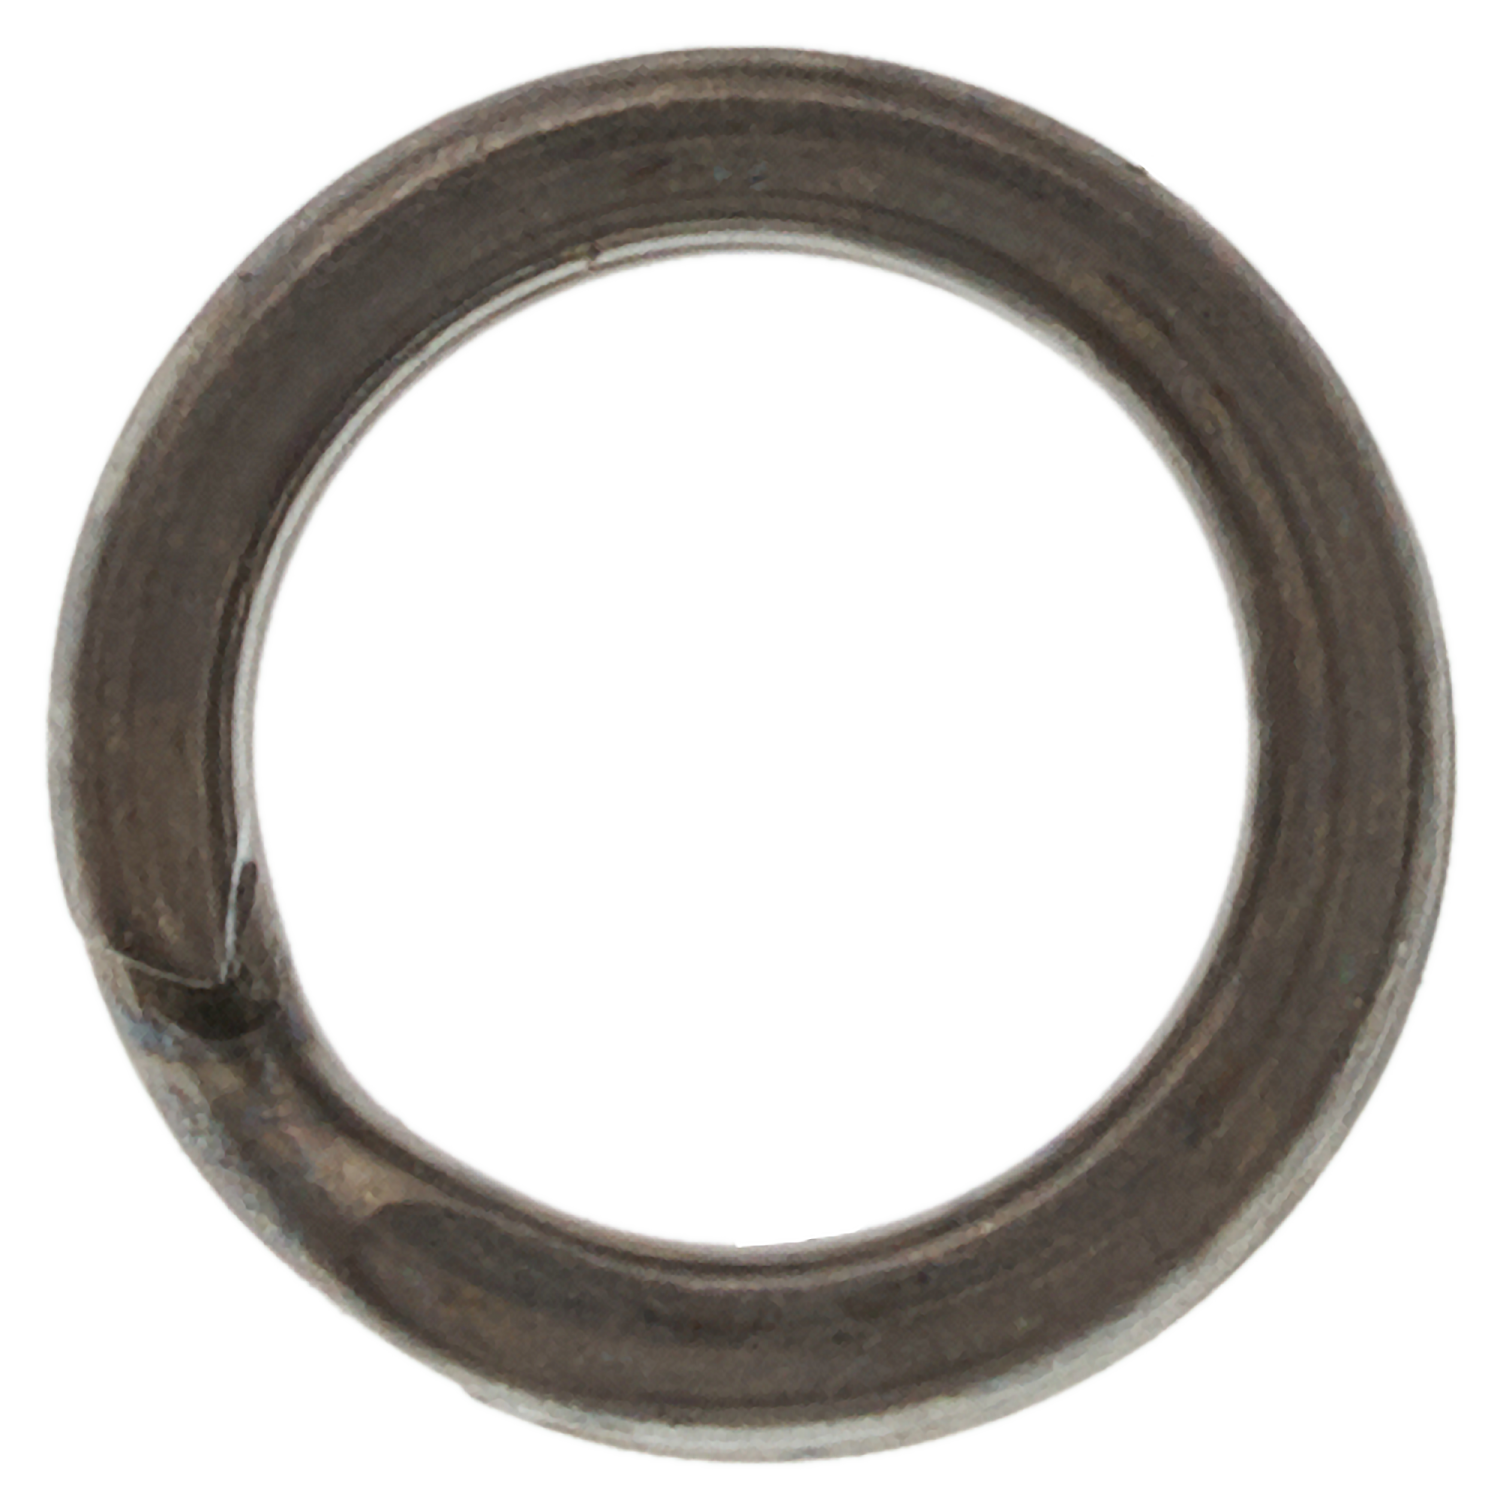 Кольцо заводное Hanzo SR 9010 плоское, усиленное #2 BLN